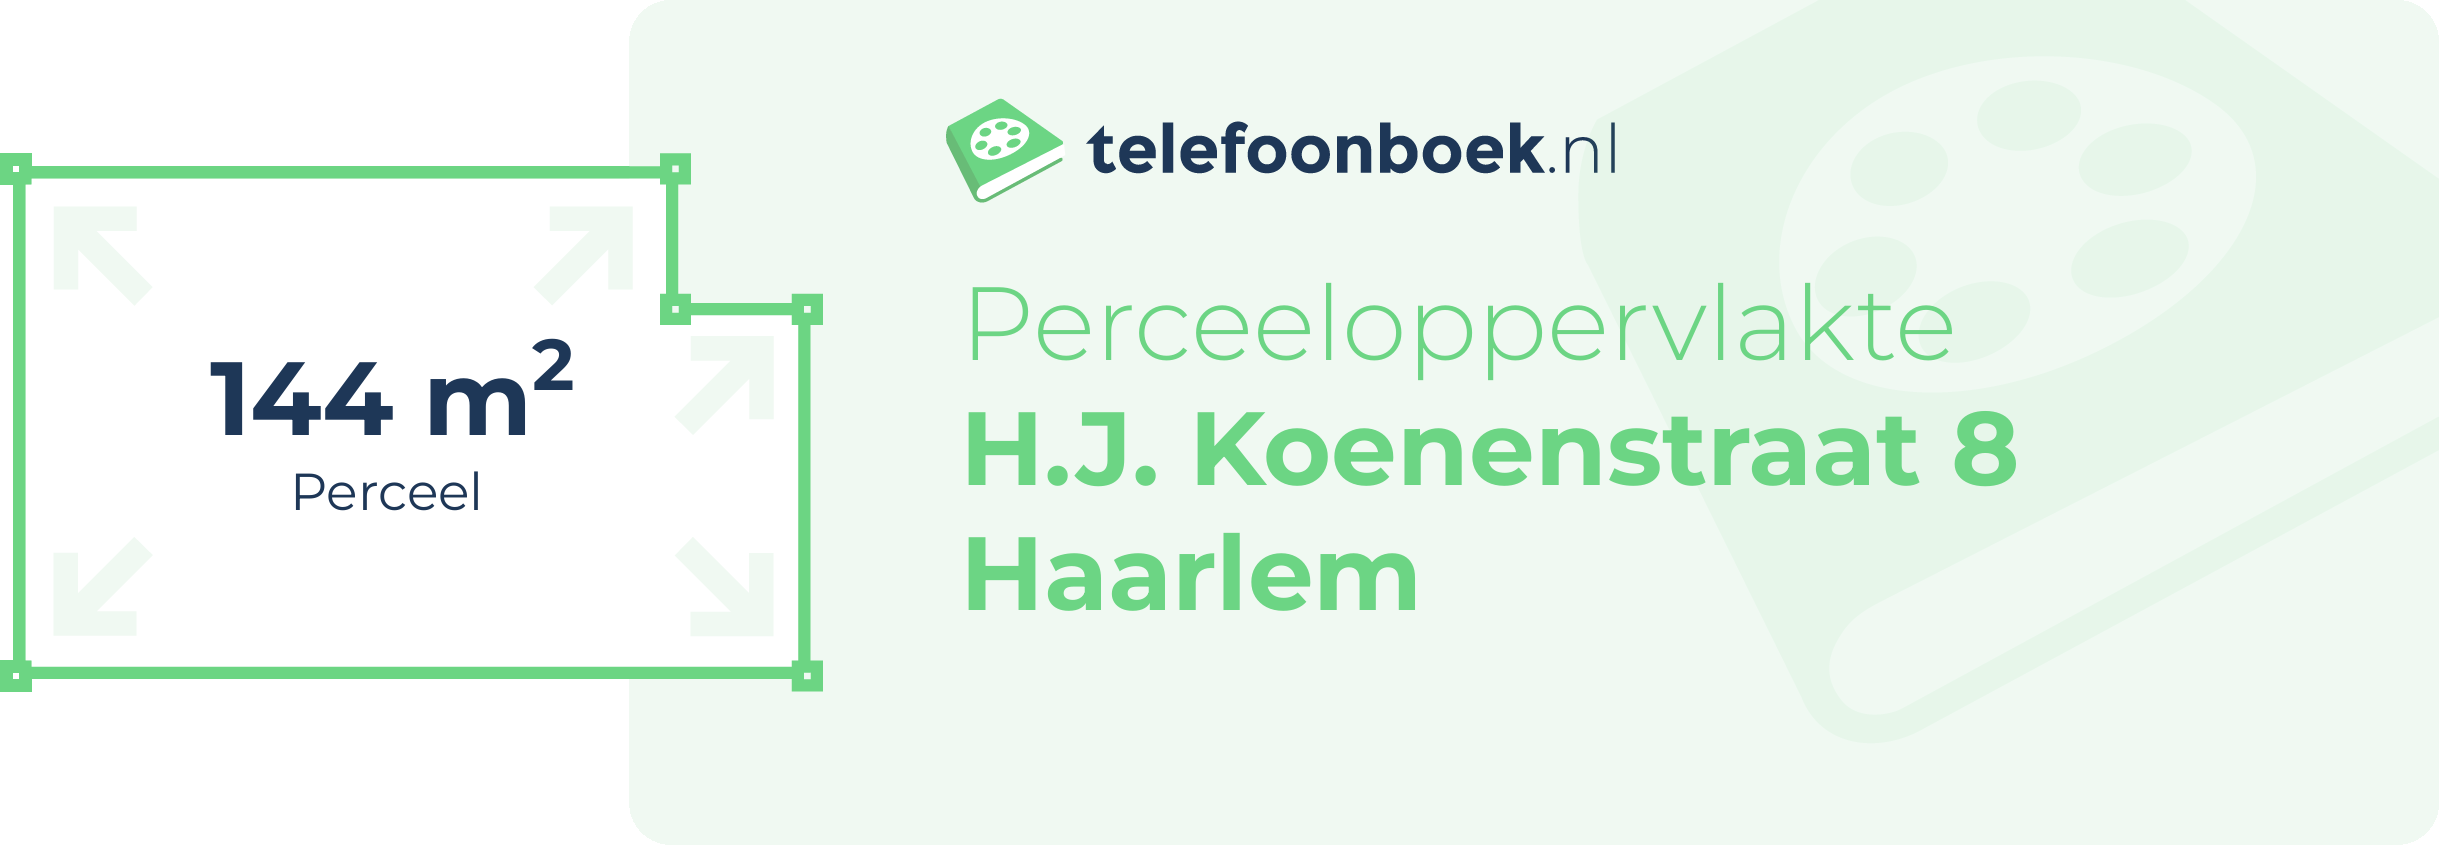 Perceeloppervlakte H.J. Koenenstraat 8 Haarlem